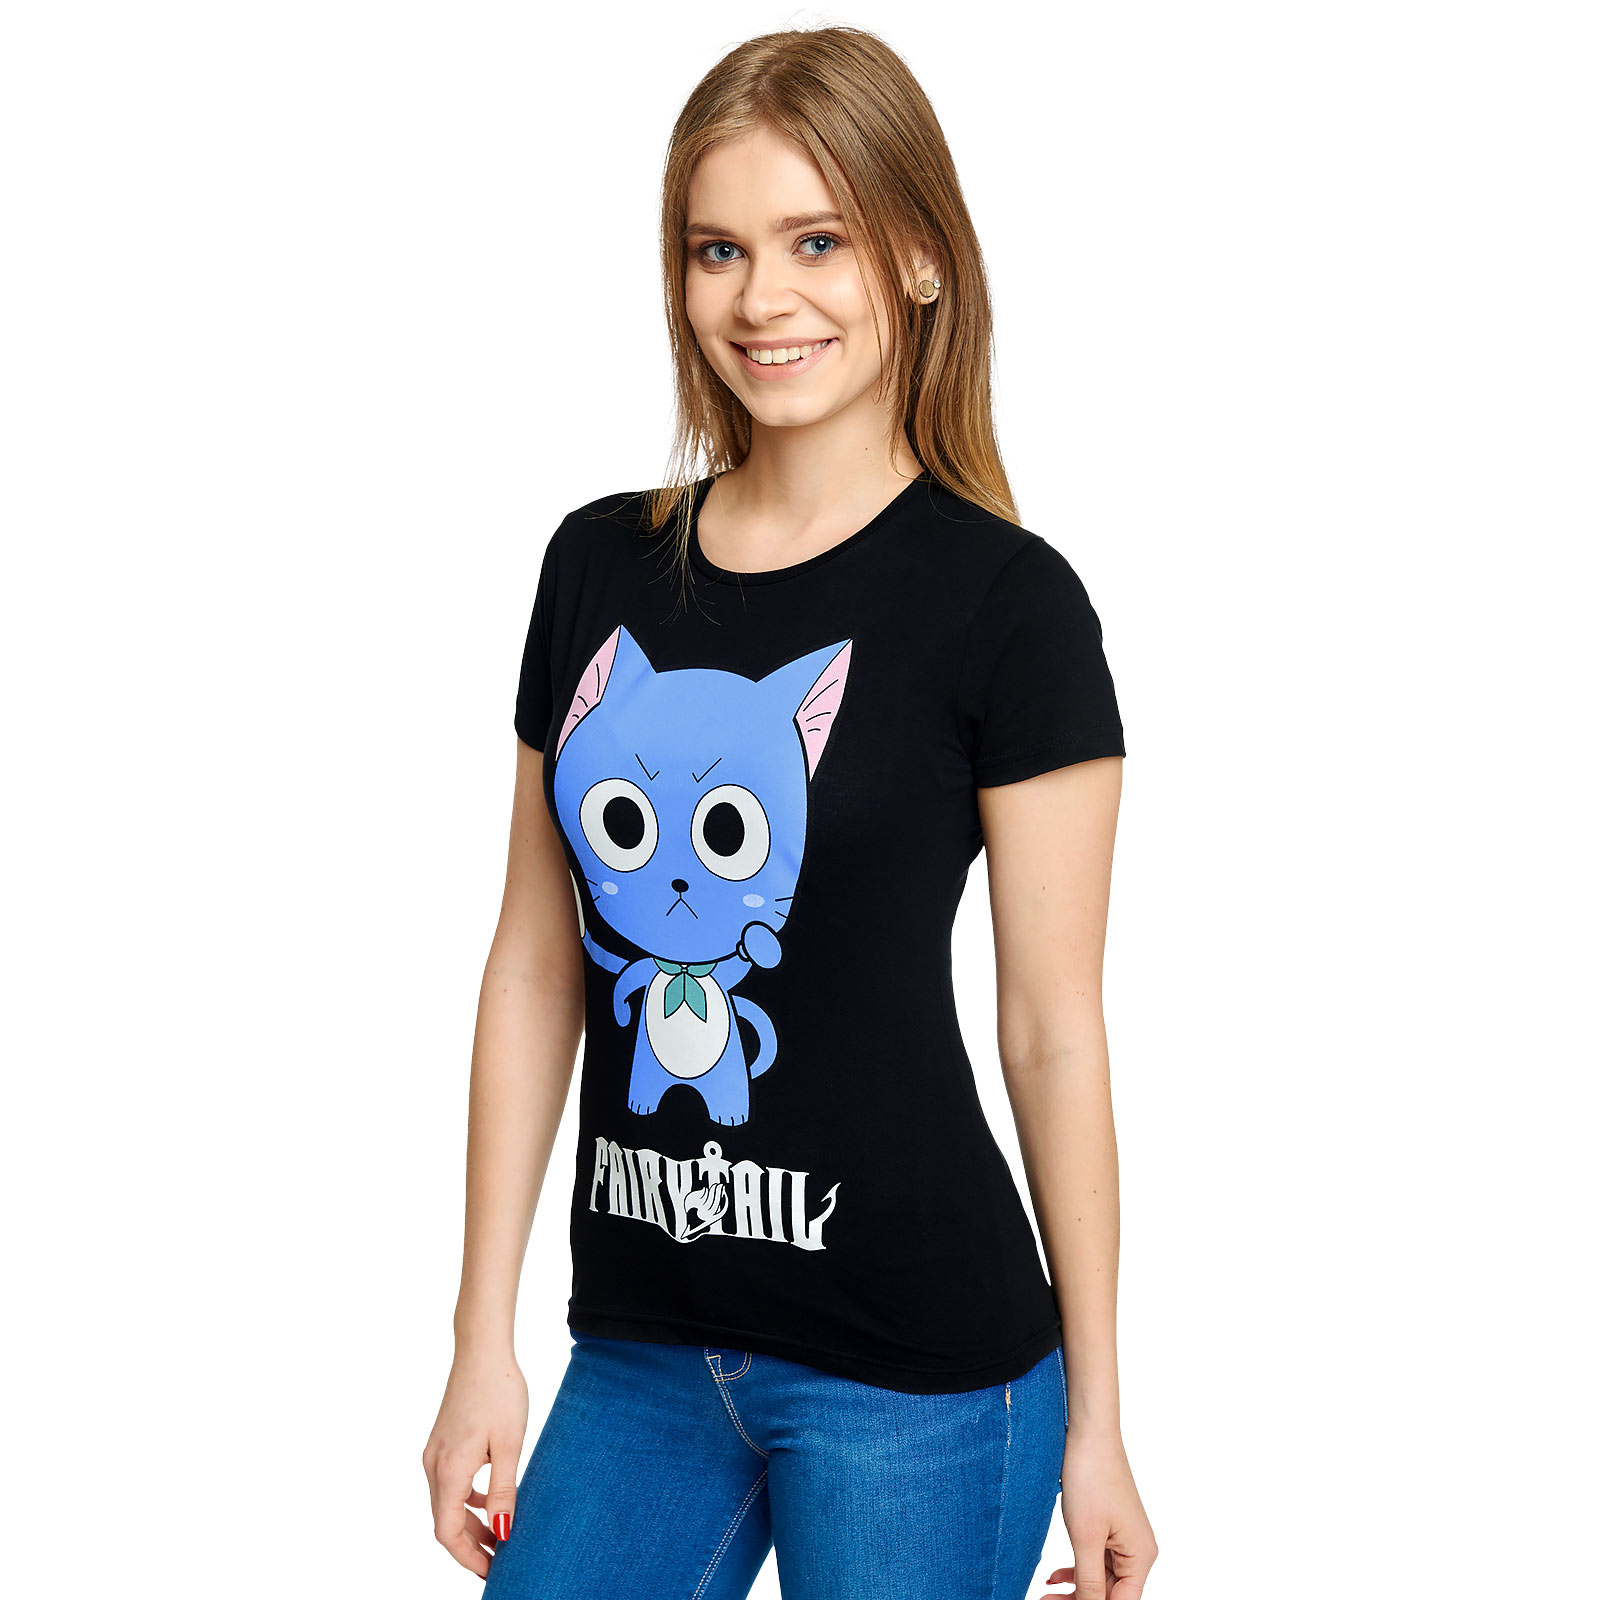 Fairy Tail - T-shirt Happy pour femmes noir